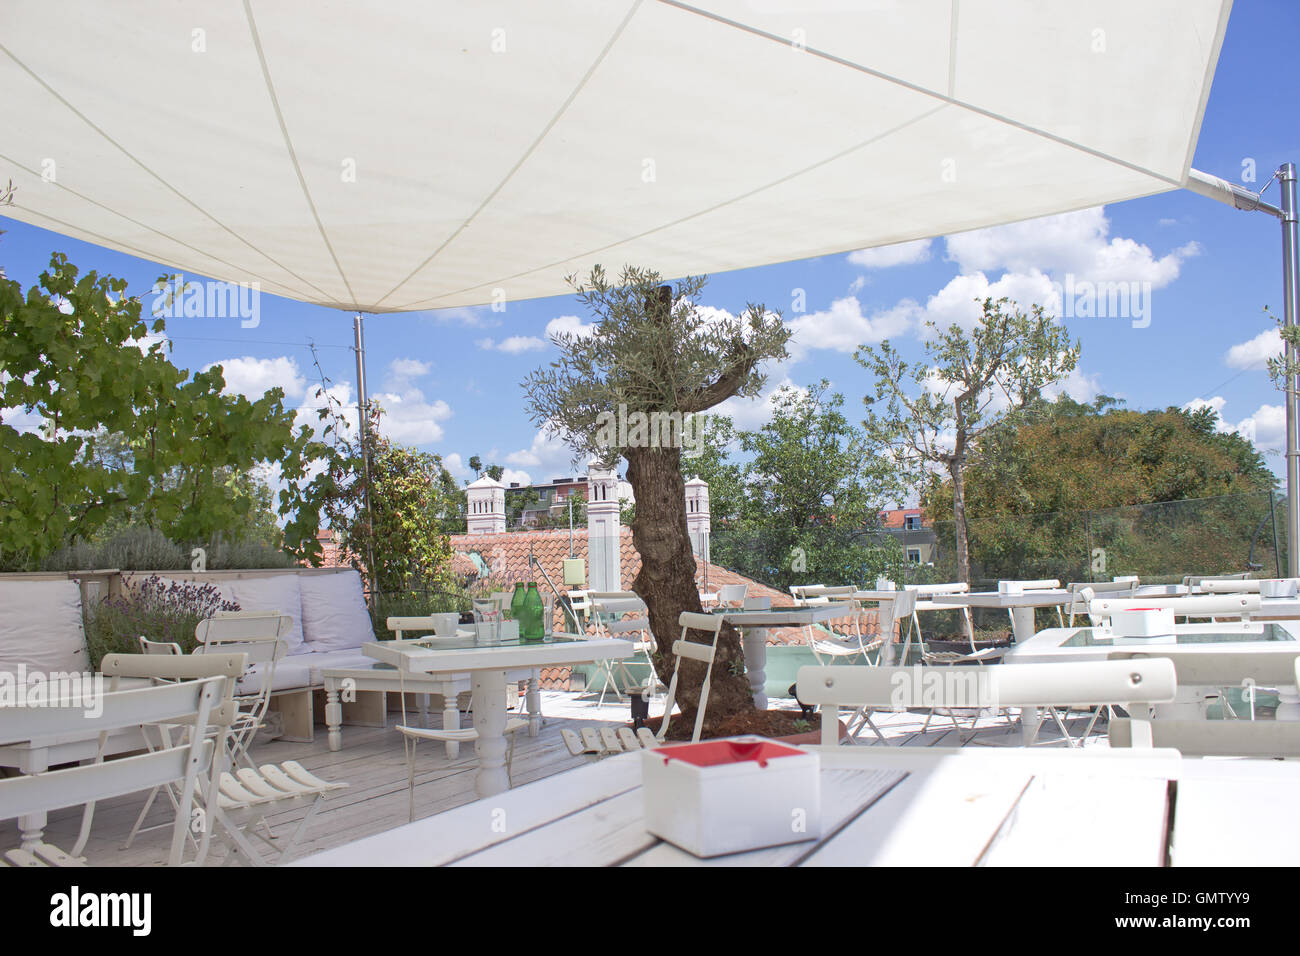 Outdoor-Restaurant-Terrasse am Dach mit Sonnenschirm Stockfotografie - Alamy